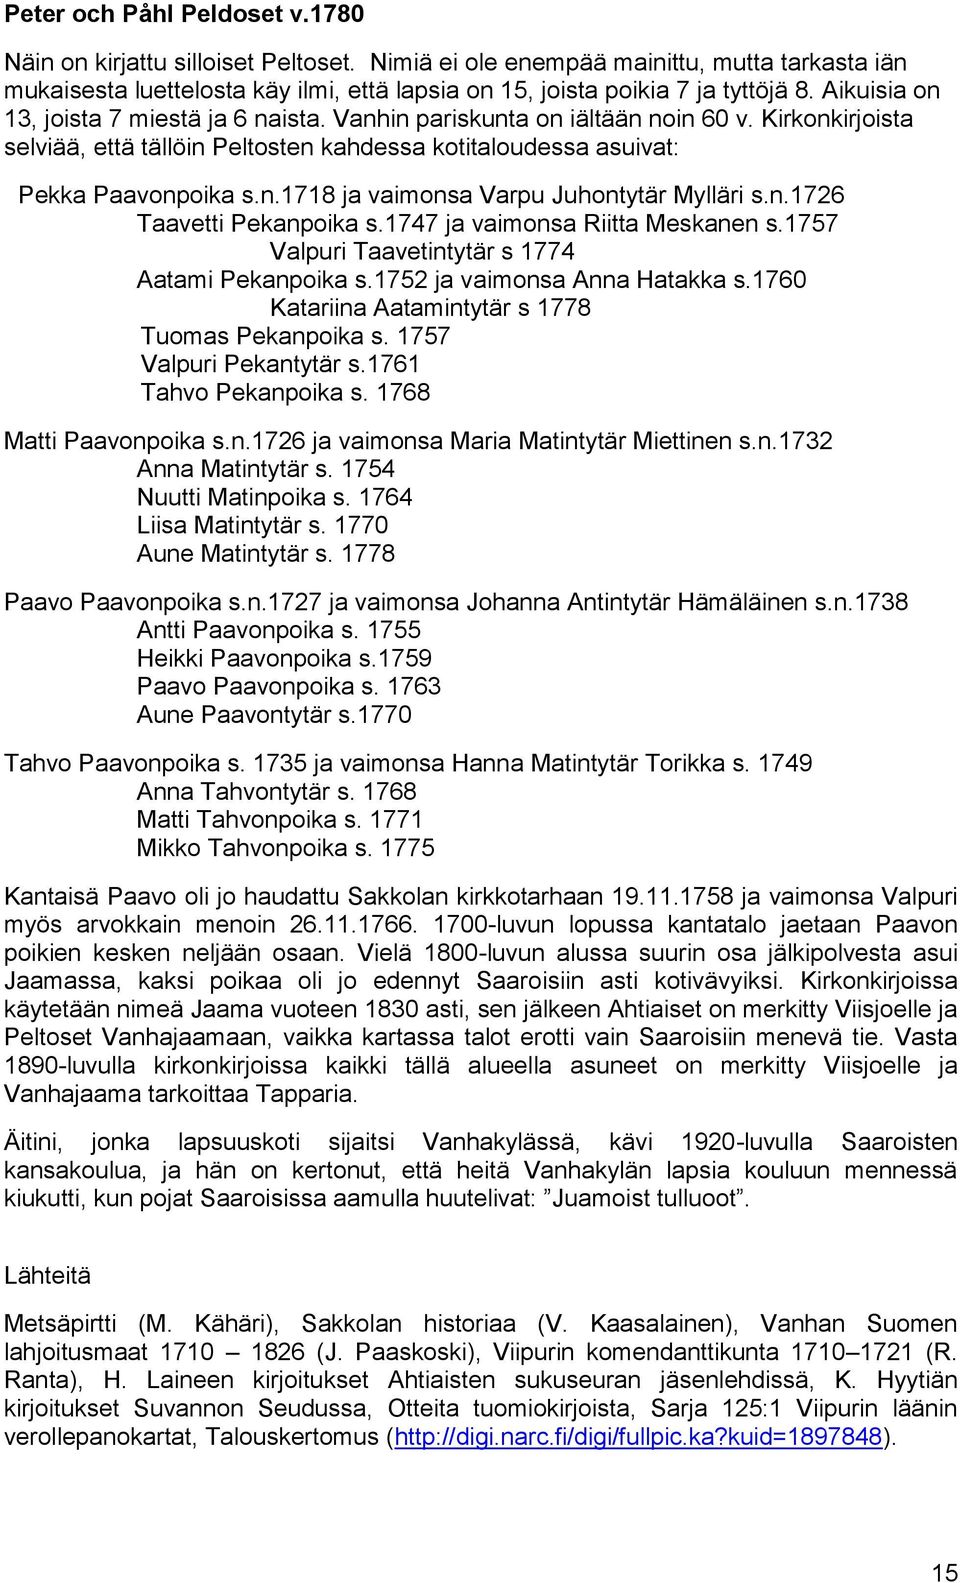 n.1726 Taavetti Pekanpoika s.1747 ja vaimonsa Riitta Meskanen s.1757 Valpuri Taavetintytär s 1774 Aatami Pekanpoika s.1752 ja vaimonsa Anna Hatakka s.